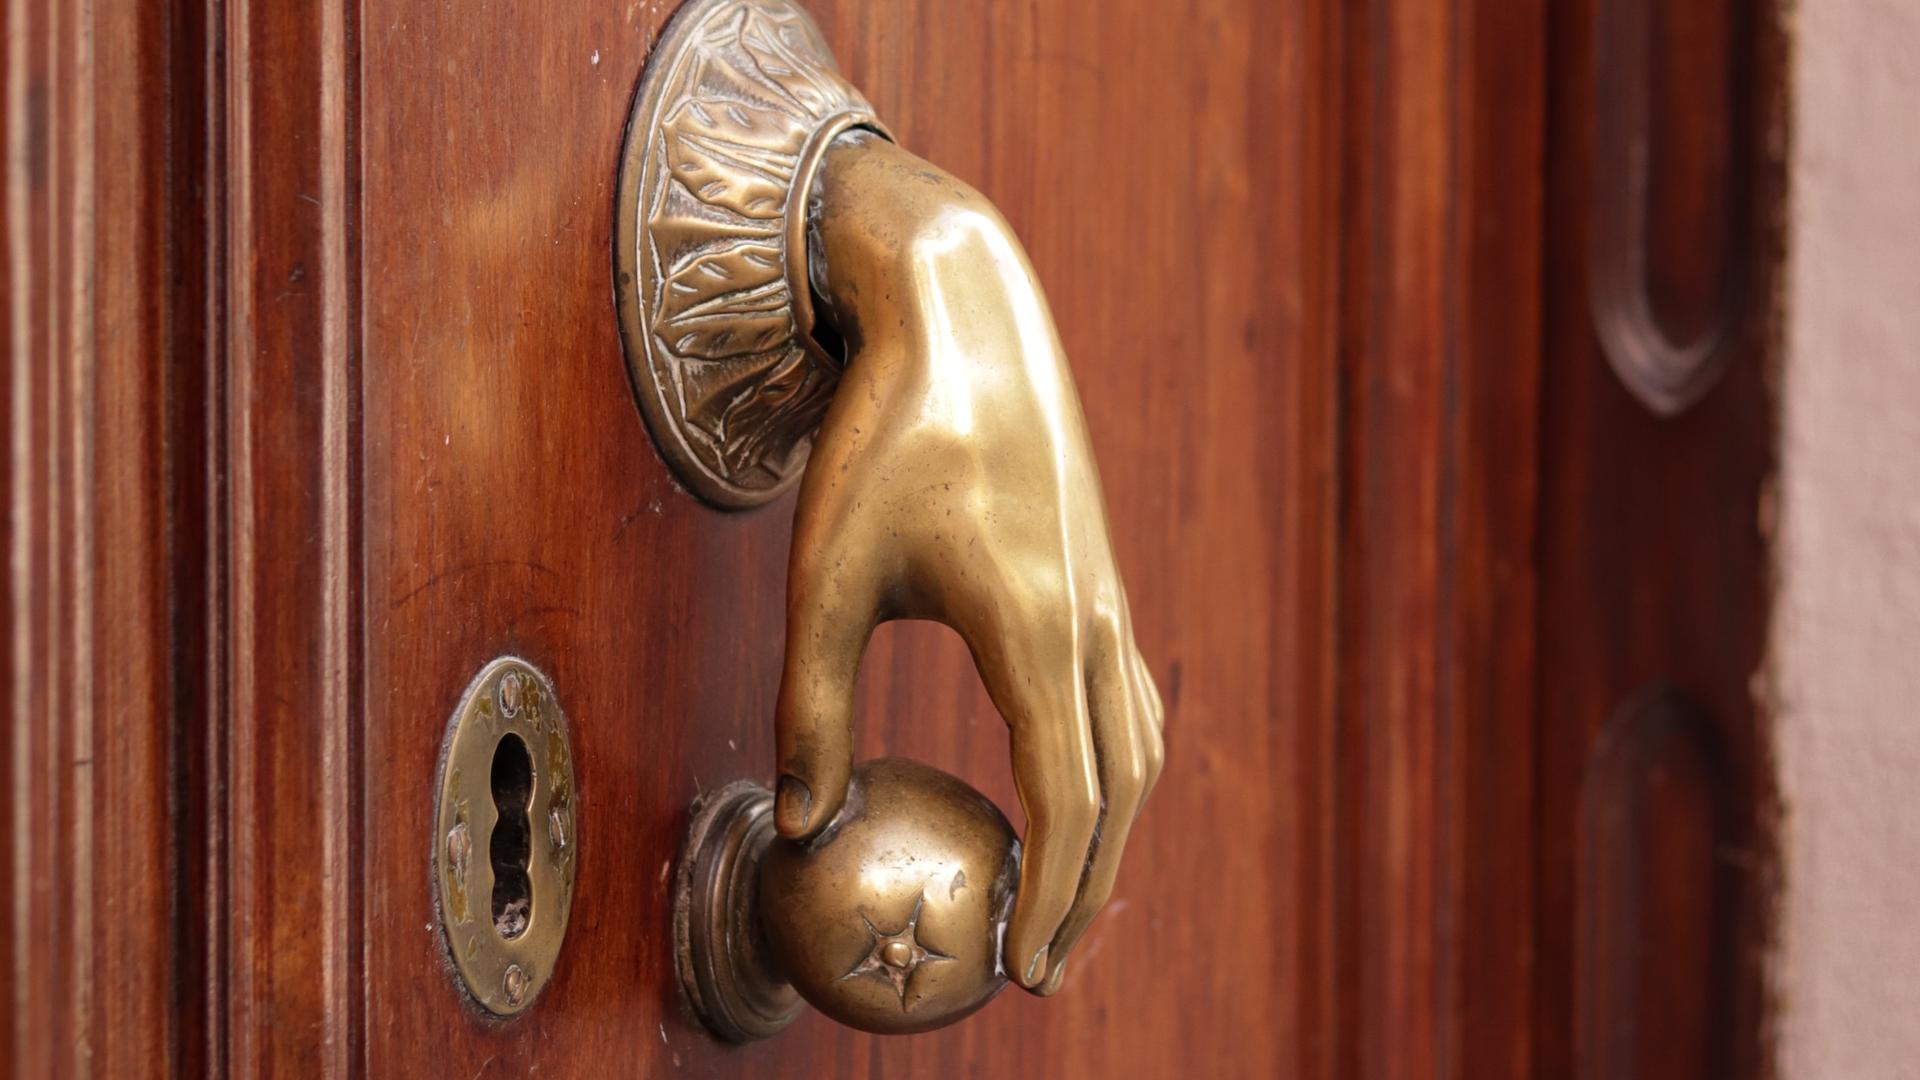 Ein besonderer Türgriff: eine Hand aus Messing greift eine kleine runde Kugel. Mit diesem ungewöhnlichen Griff lässt sich eine braune Holztür öffnen.